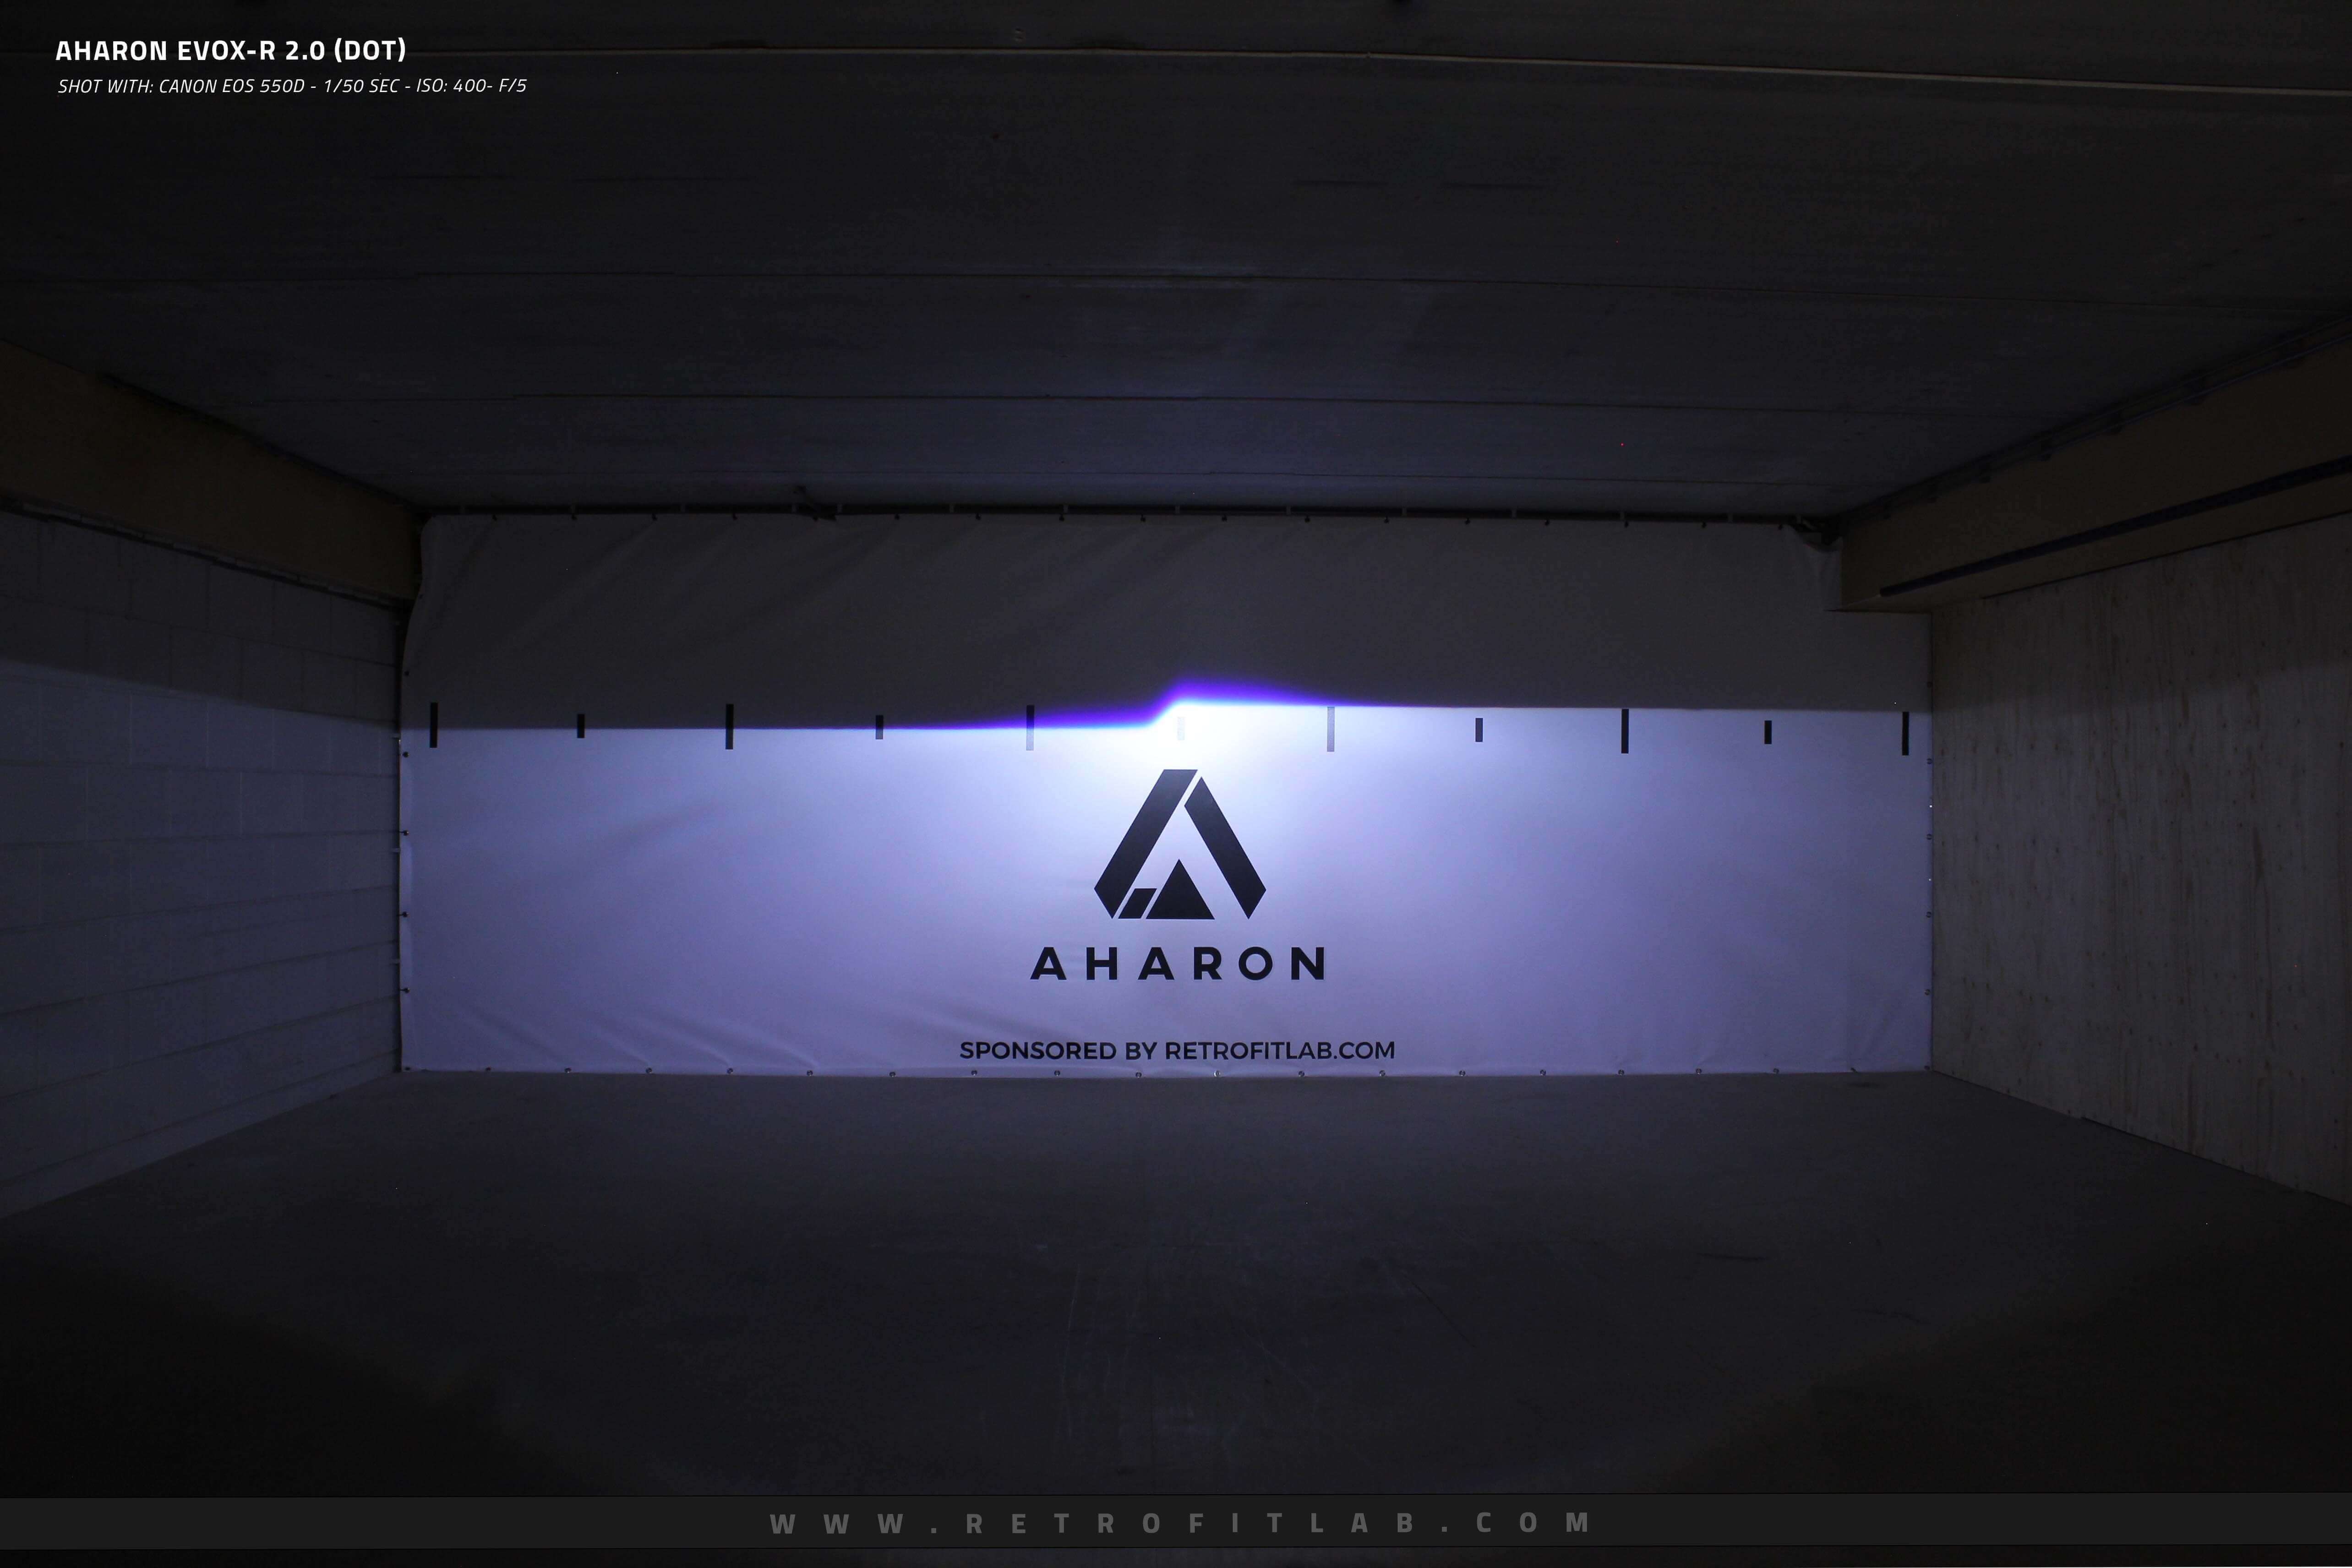 Aharon EvoX-R 2.0 Bi-xenon HID projectors Hella design